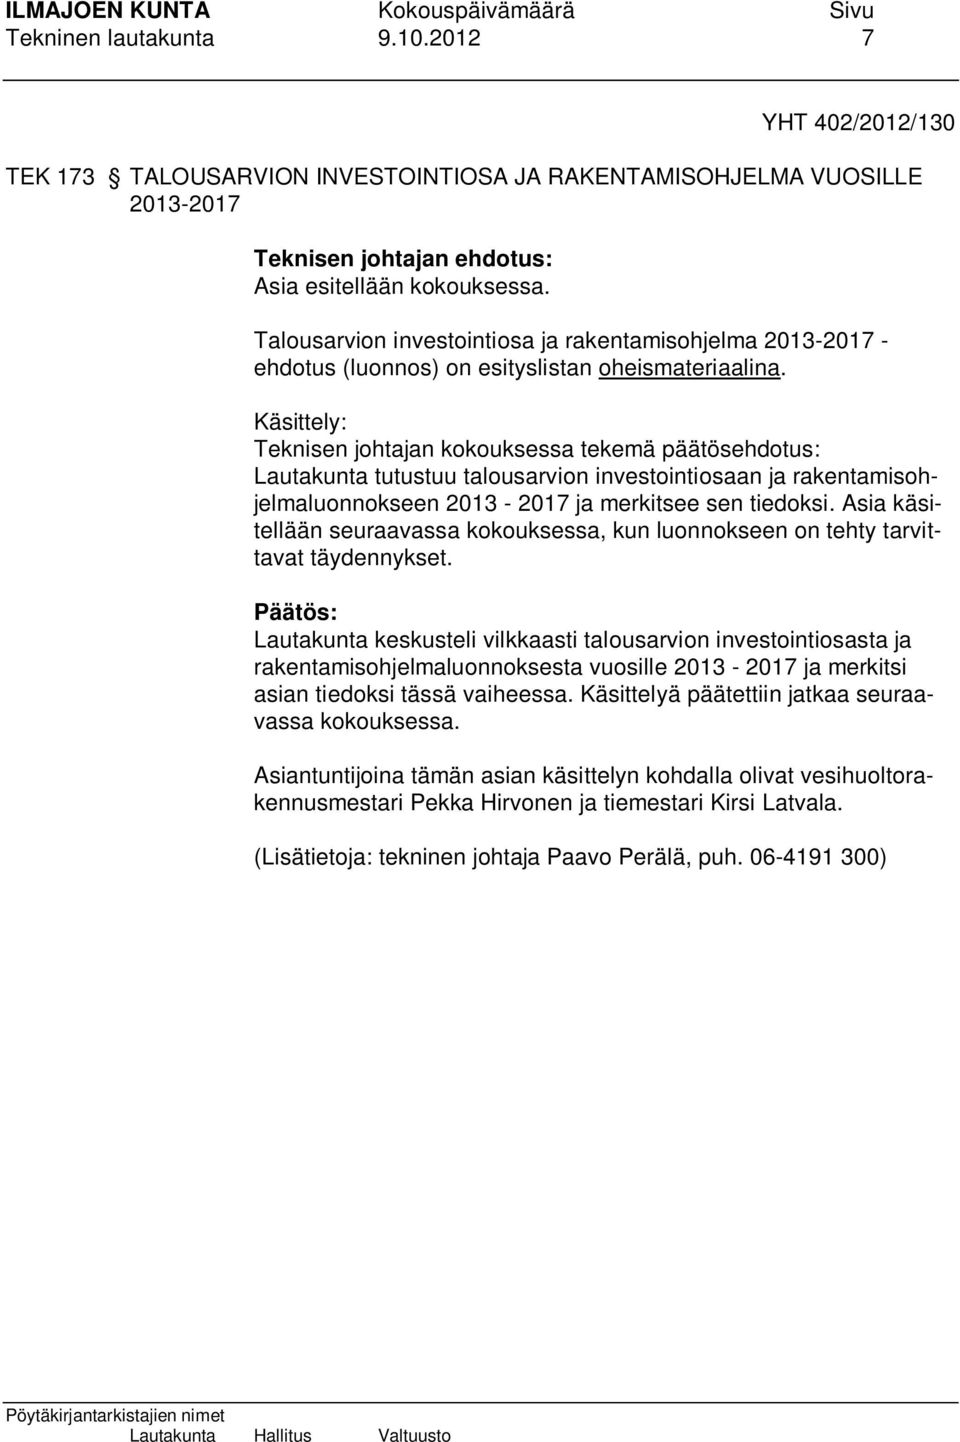 Käsittely: Teknisen johtajan kokouksessa tekemä päätösehdotus: Lautakunta tutustuu talousarvion investointiosaan ja rakentamisohjelmaluonnokseen 2013-2017 ja merkitsee sen tiedoksi.